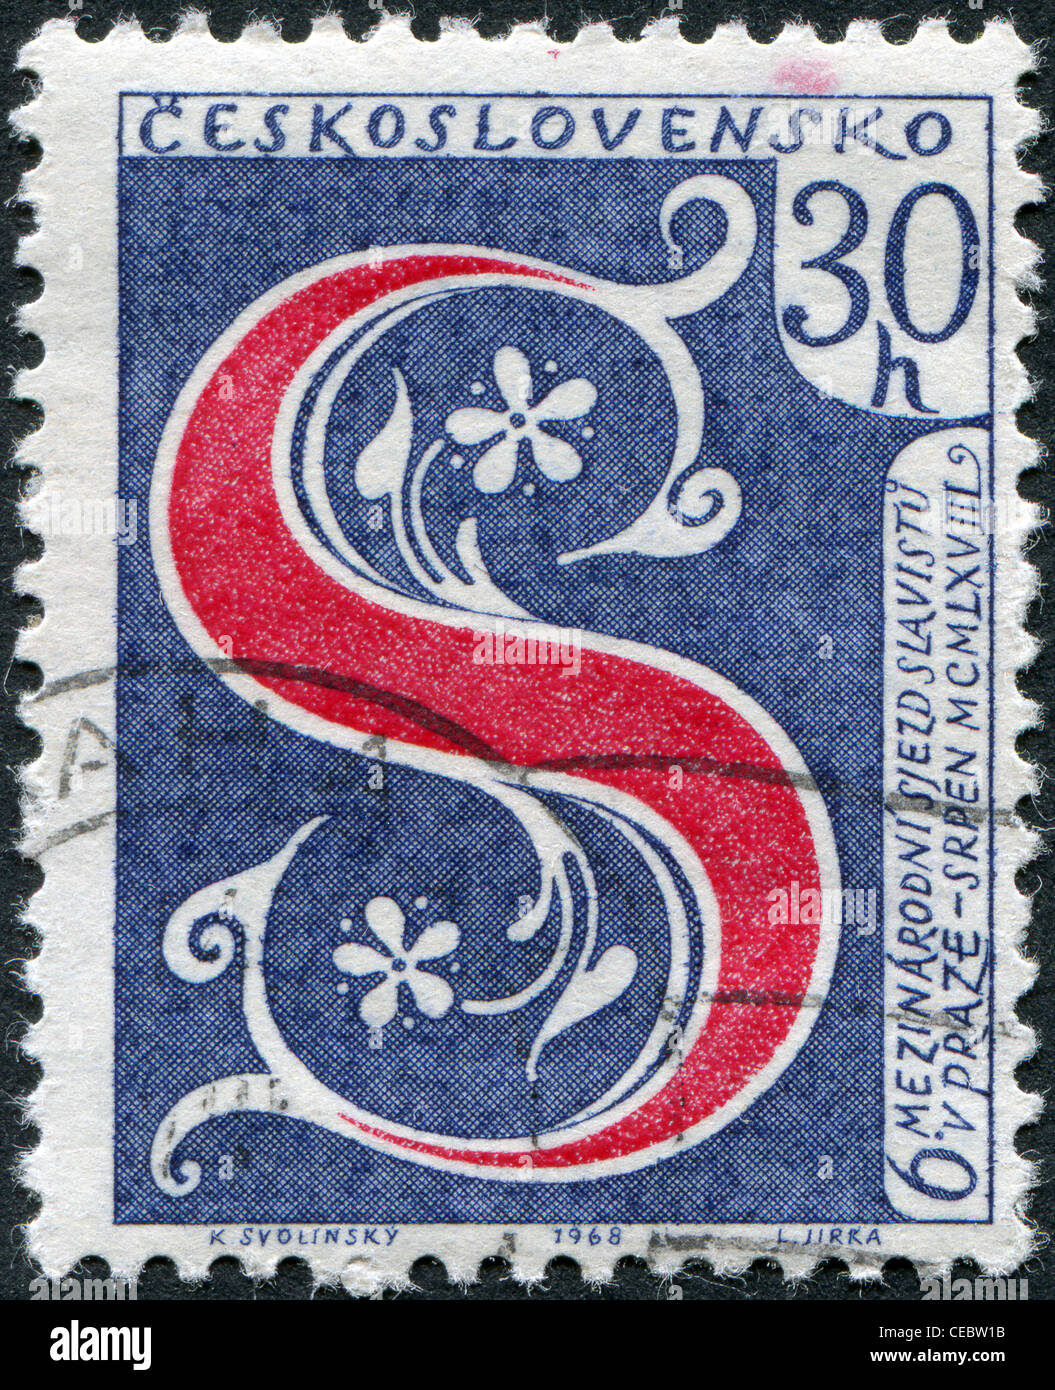 6 dedicato internazionale Congresso slavo di Praga, mostra l'emblema con la lettera S, circa 1968 Foto Stock